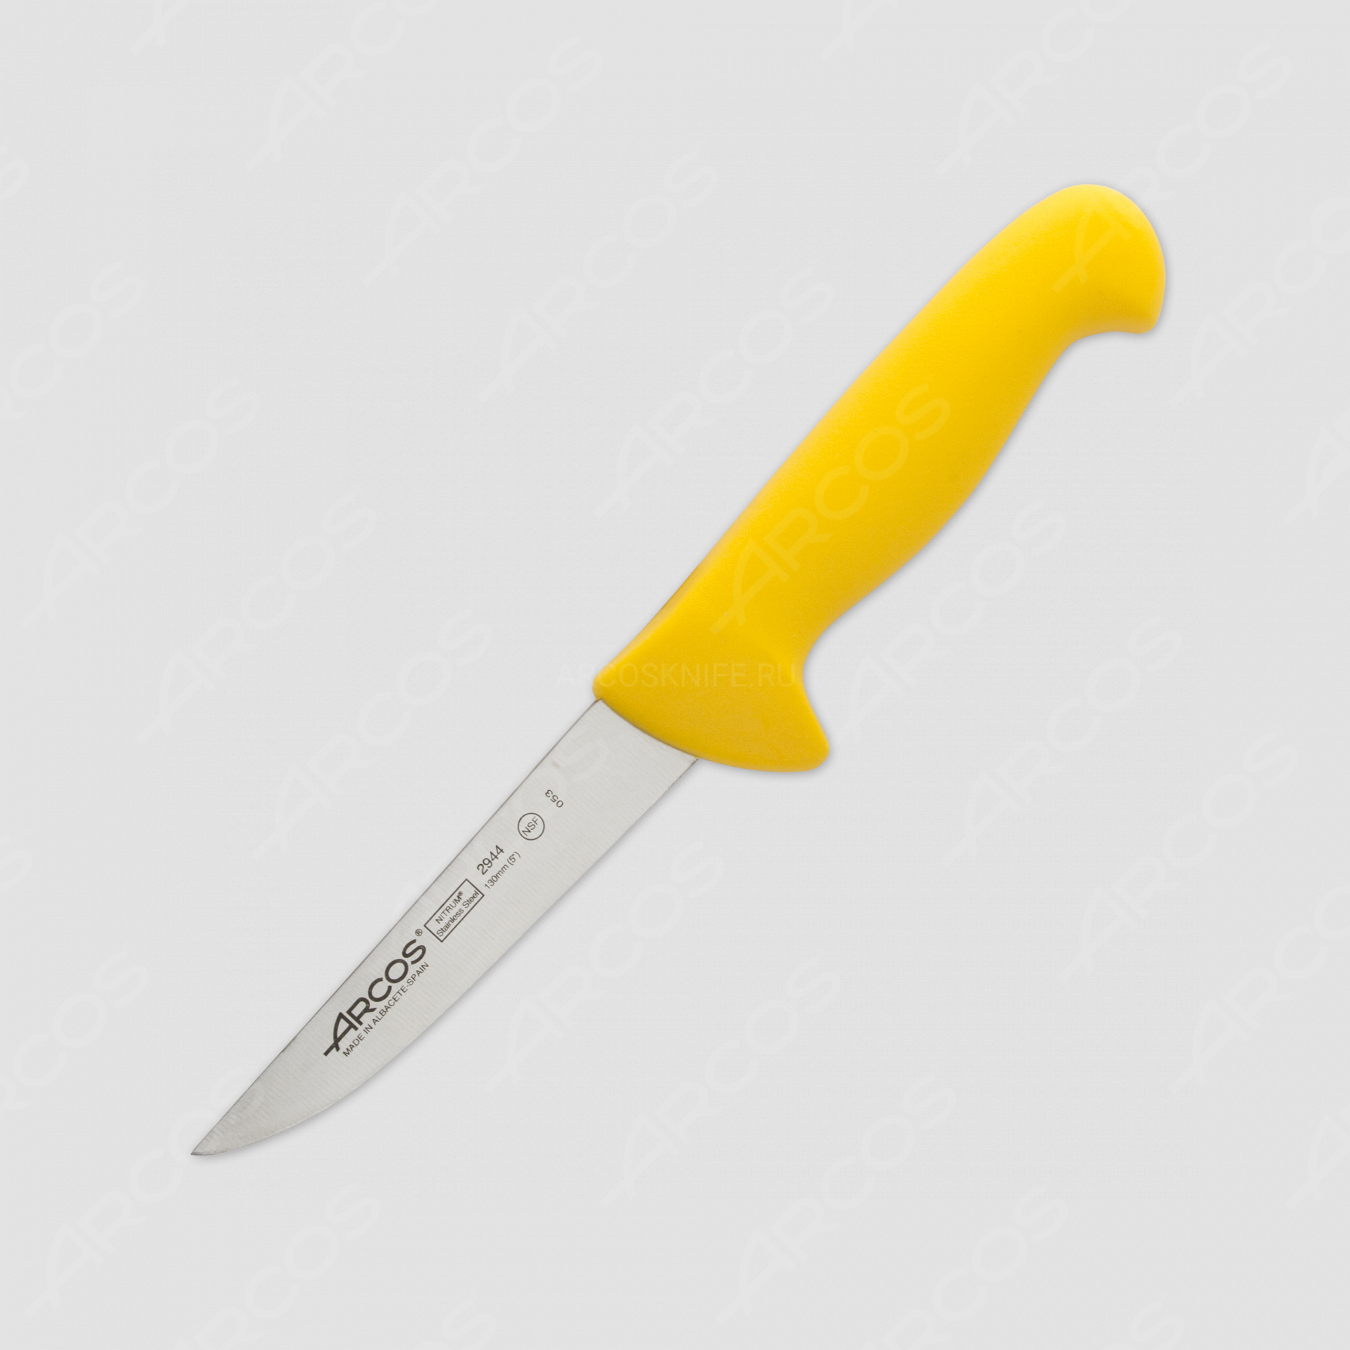 Нож кухонный обвалочный 13 см, рукоять - желтая, серия 2900, ARCOS, Испания